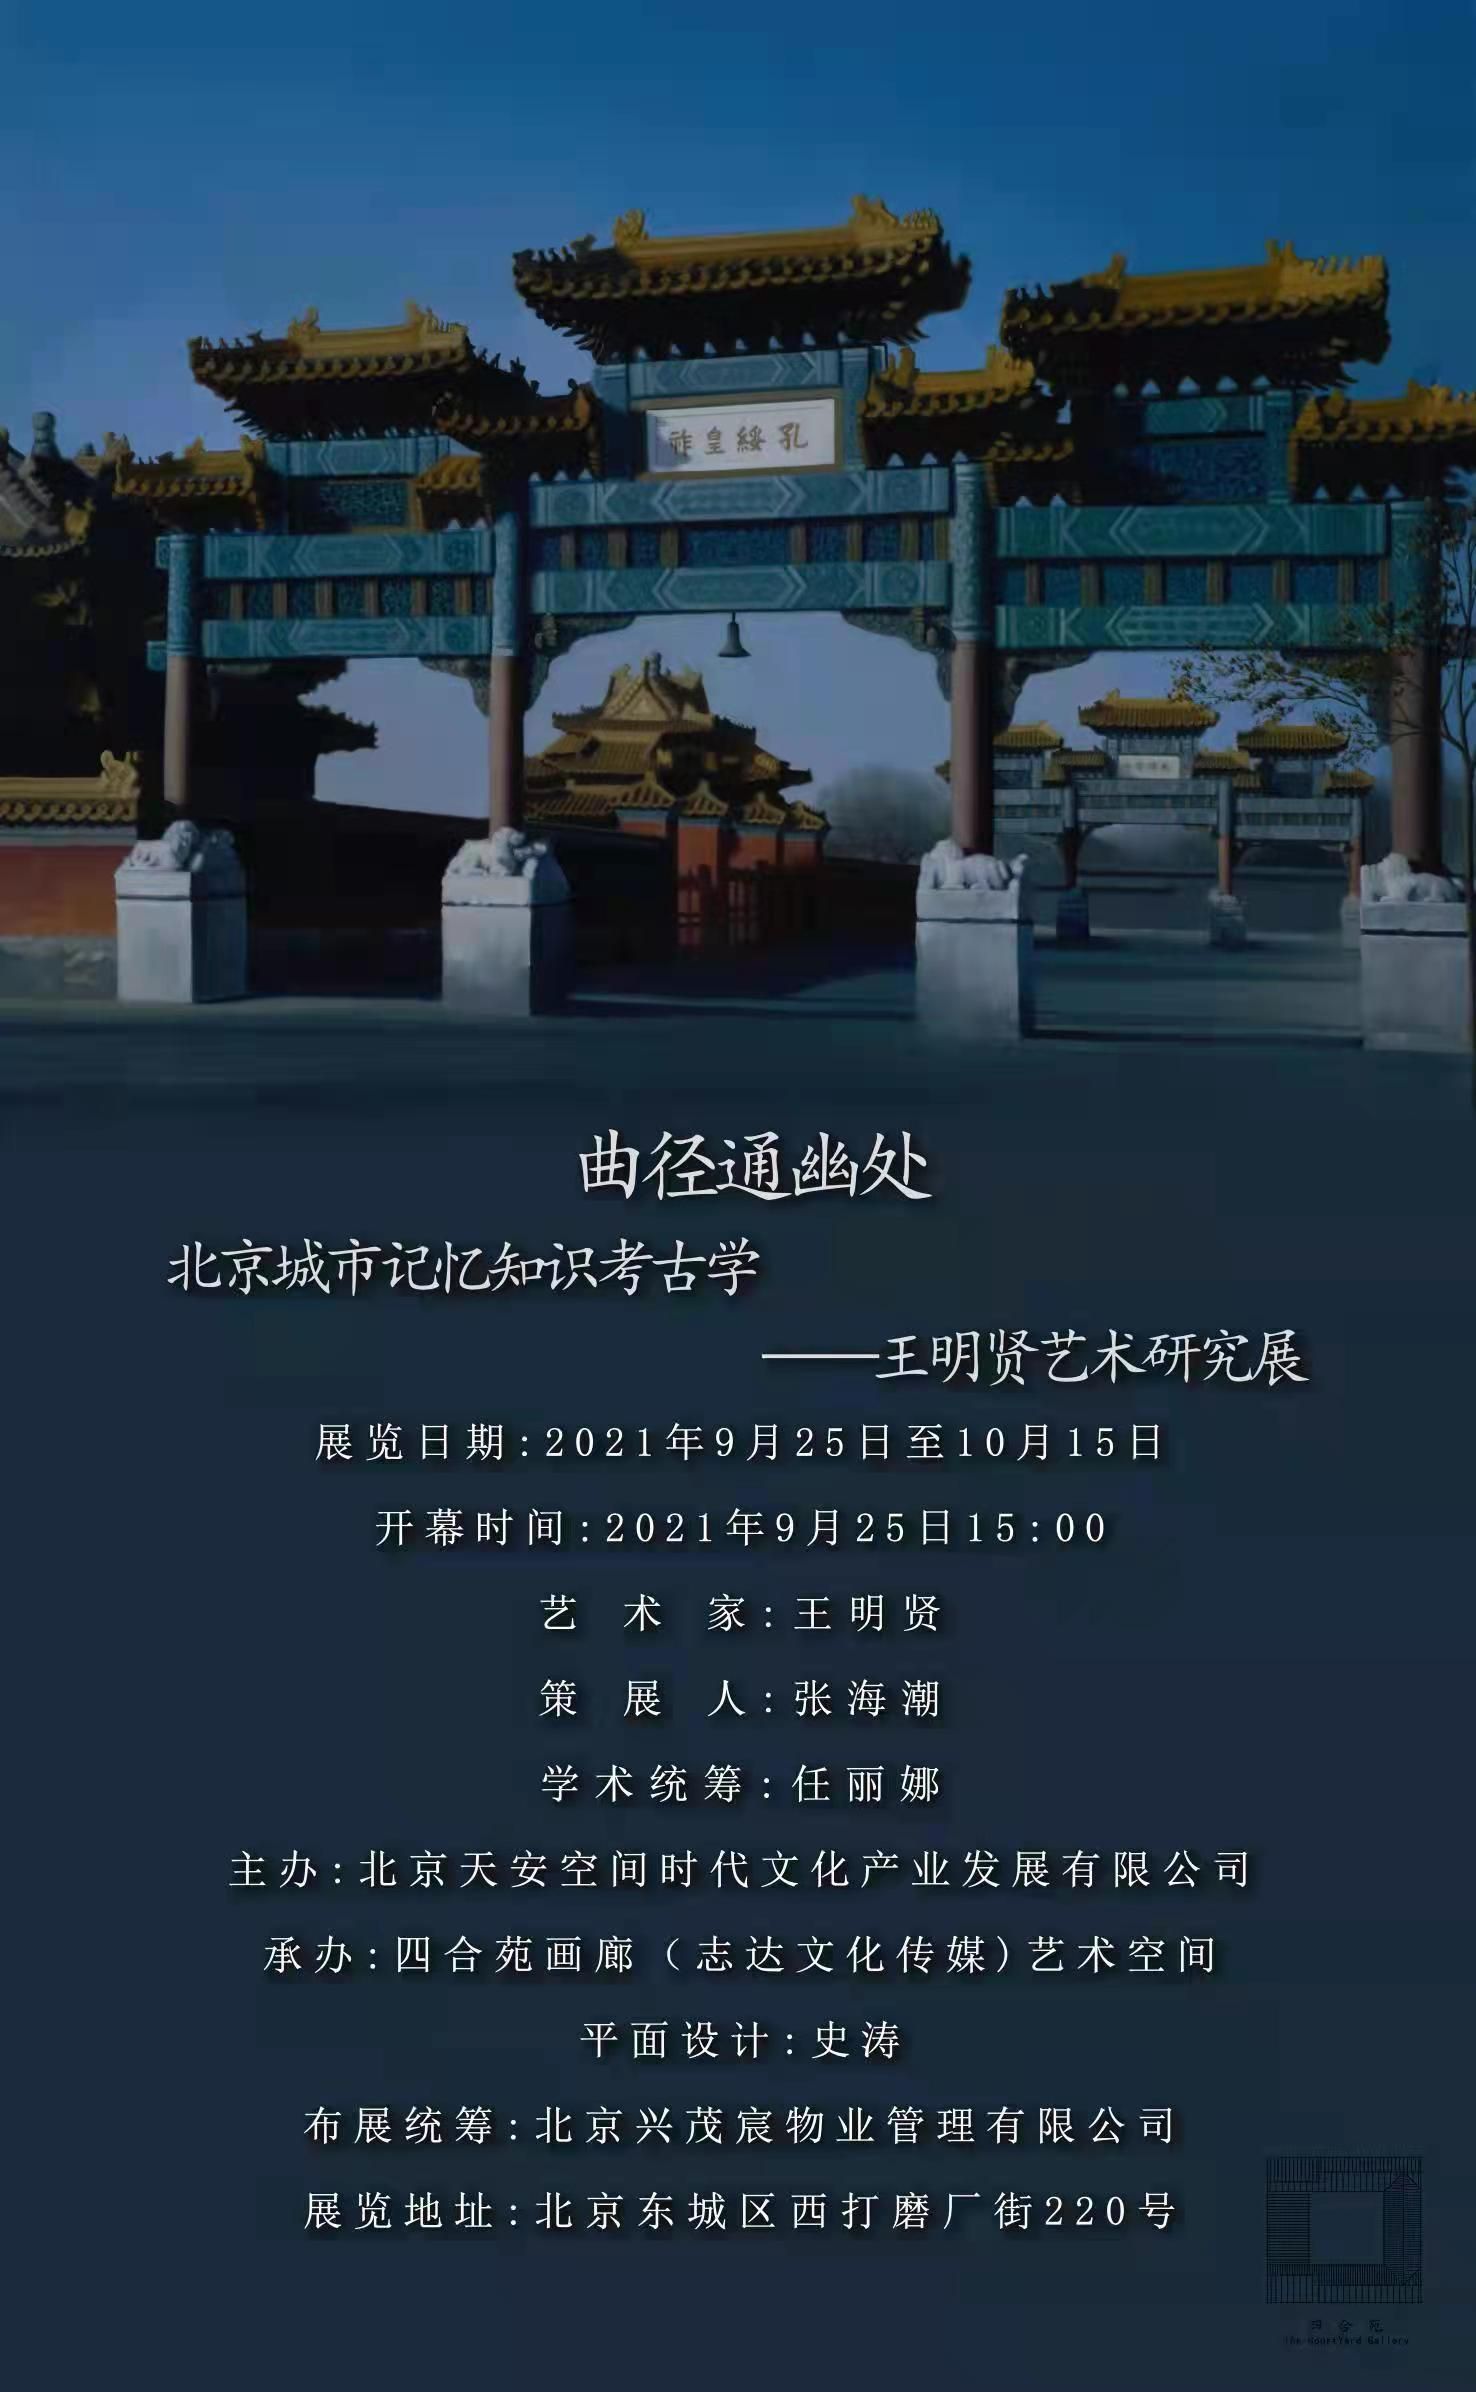 曲径通幽处：北京城市记忆知识考古学——王明贤艺术研究展